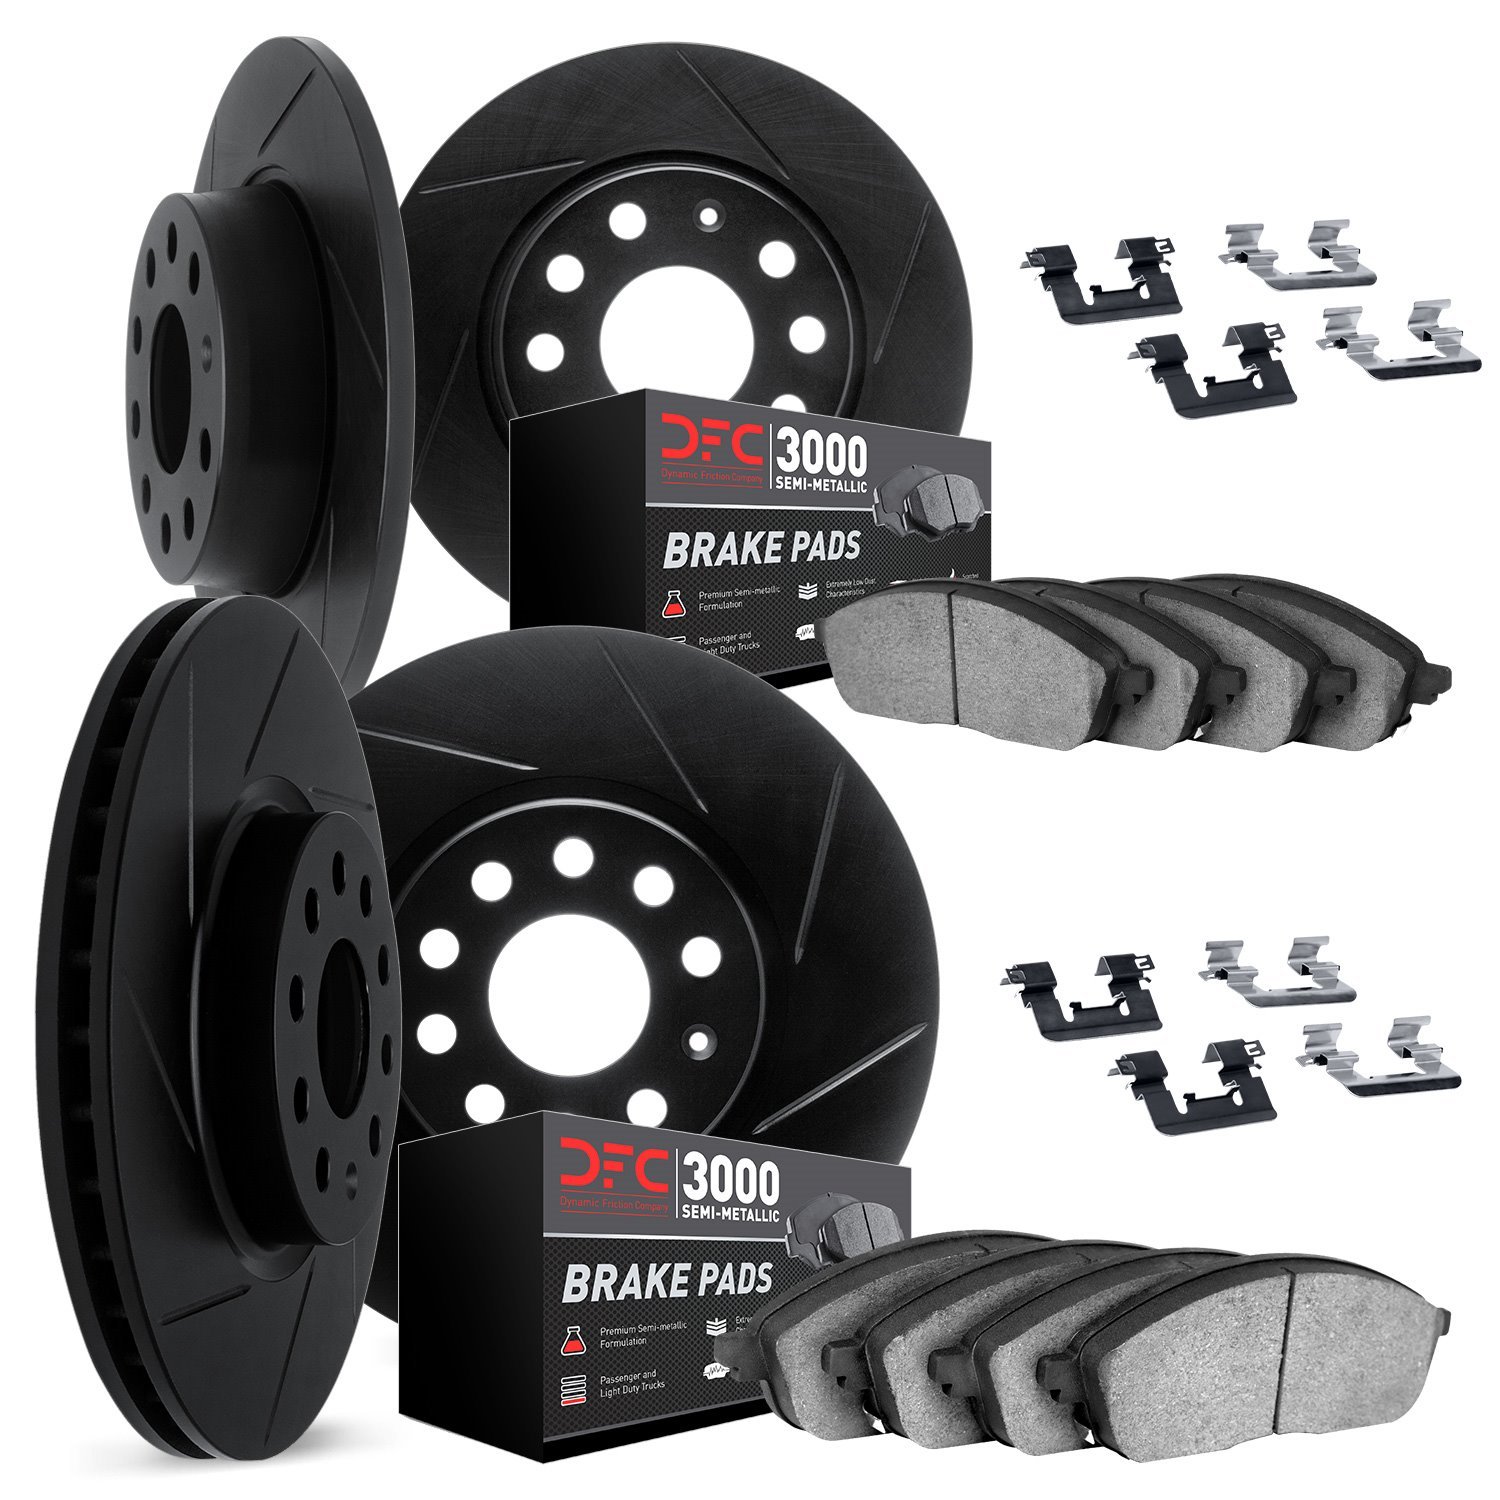 3114-63105 Slotted Brake Rotors with 3000-Series Semi-Metallic Brake Pads Kit & Hardware [Black], 2006-2012 Mercedes-Benz, Posit